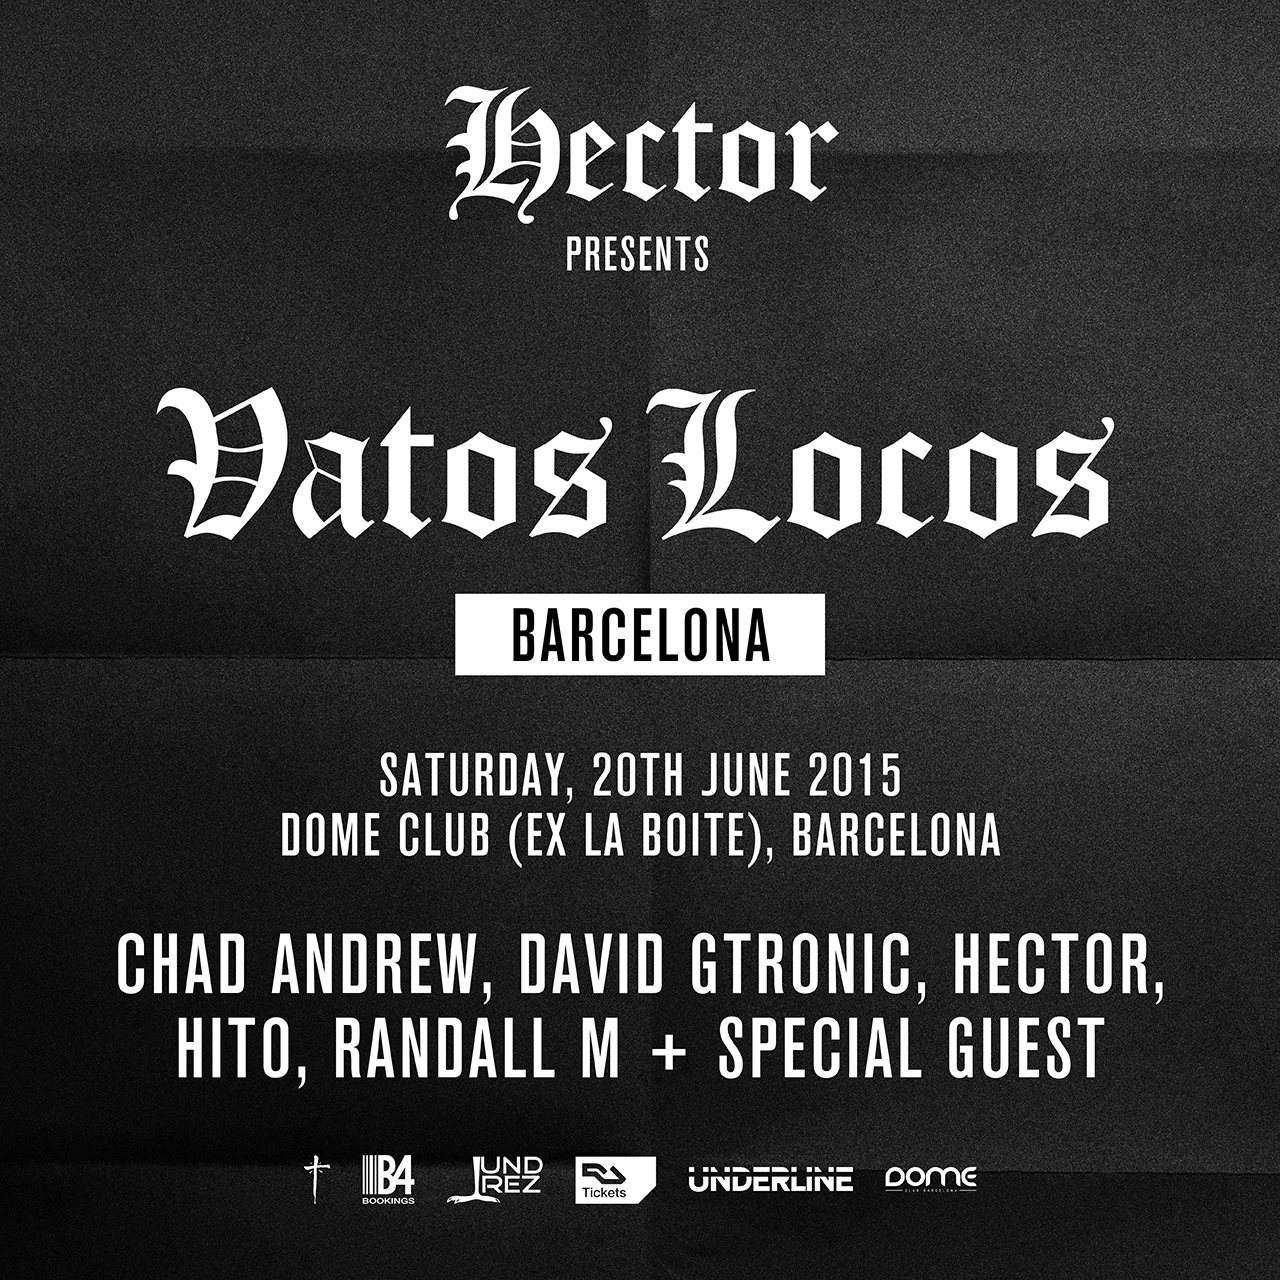 R33: Hector presents Vatos Locos - Página frontal